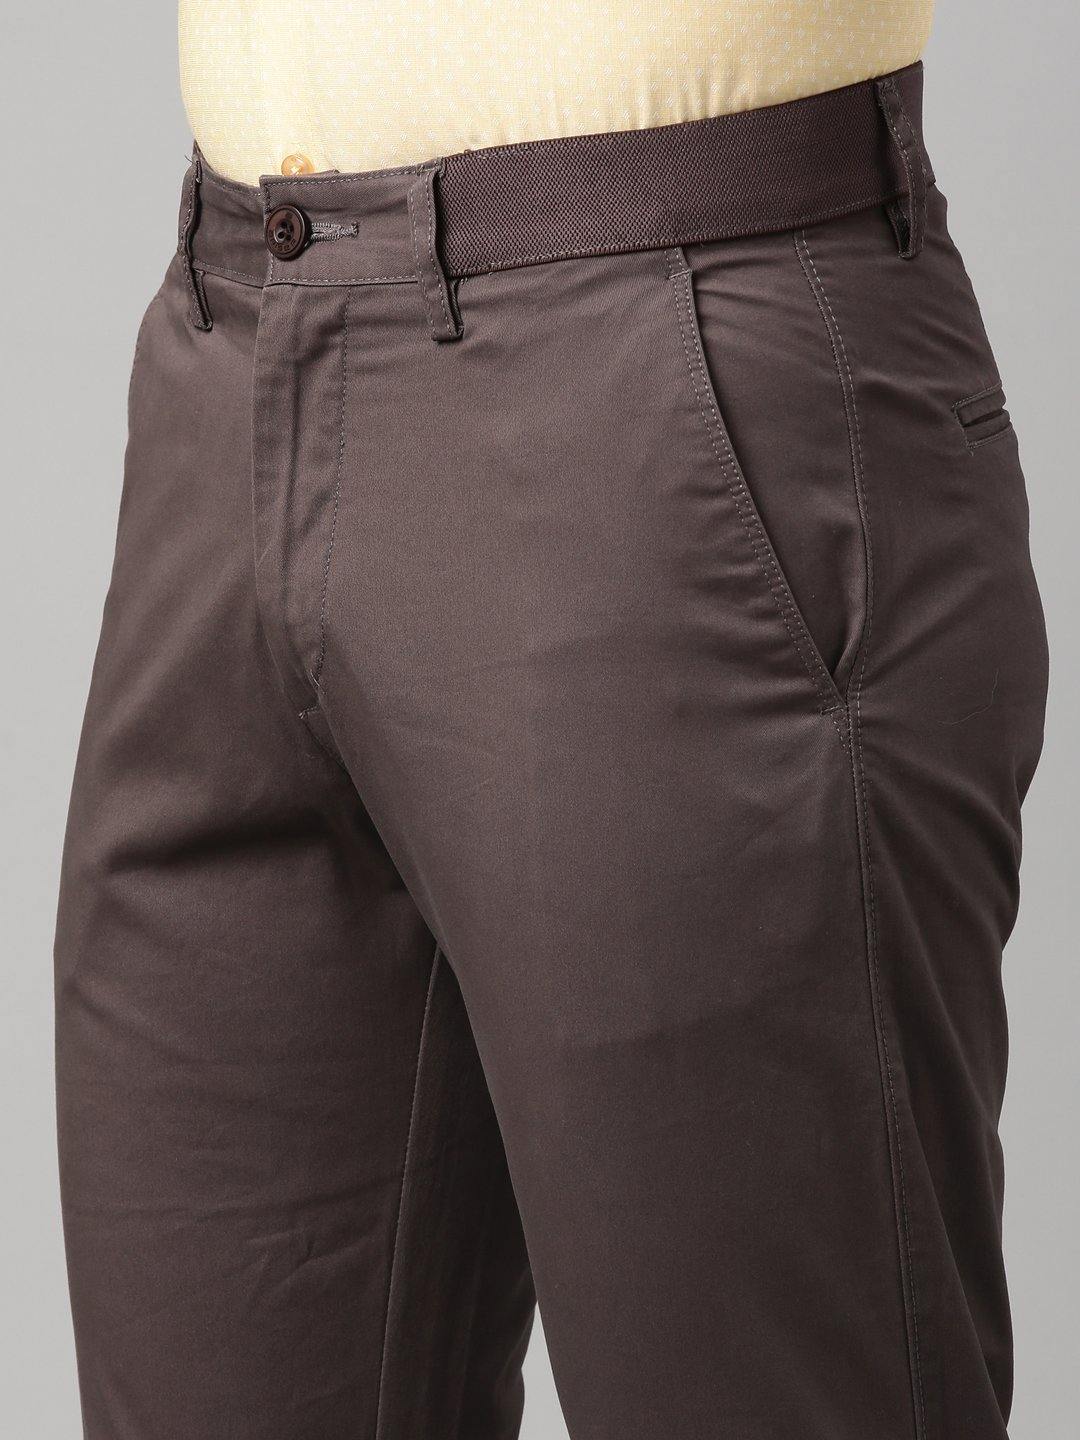 Buy DIGITAL SHOPEE Women Regular Fit Elastic Waist Full Length Cotton  Formal Trouser for Casual Wear Office Wear Beige at Amazonin